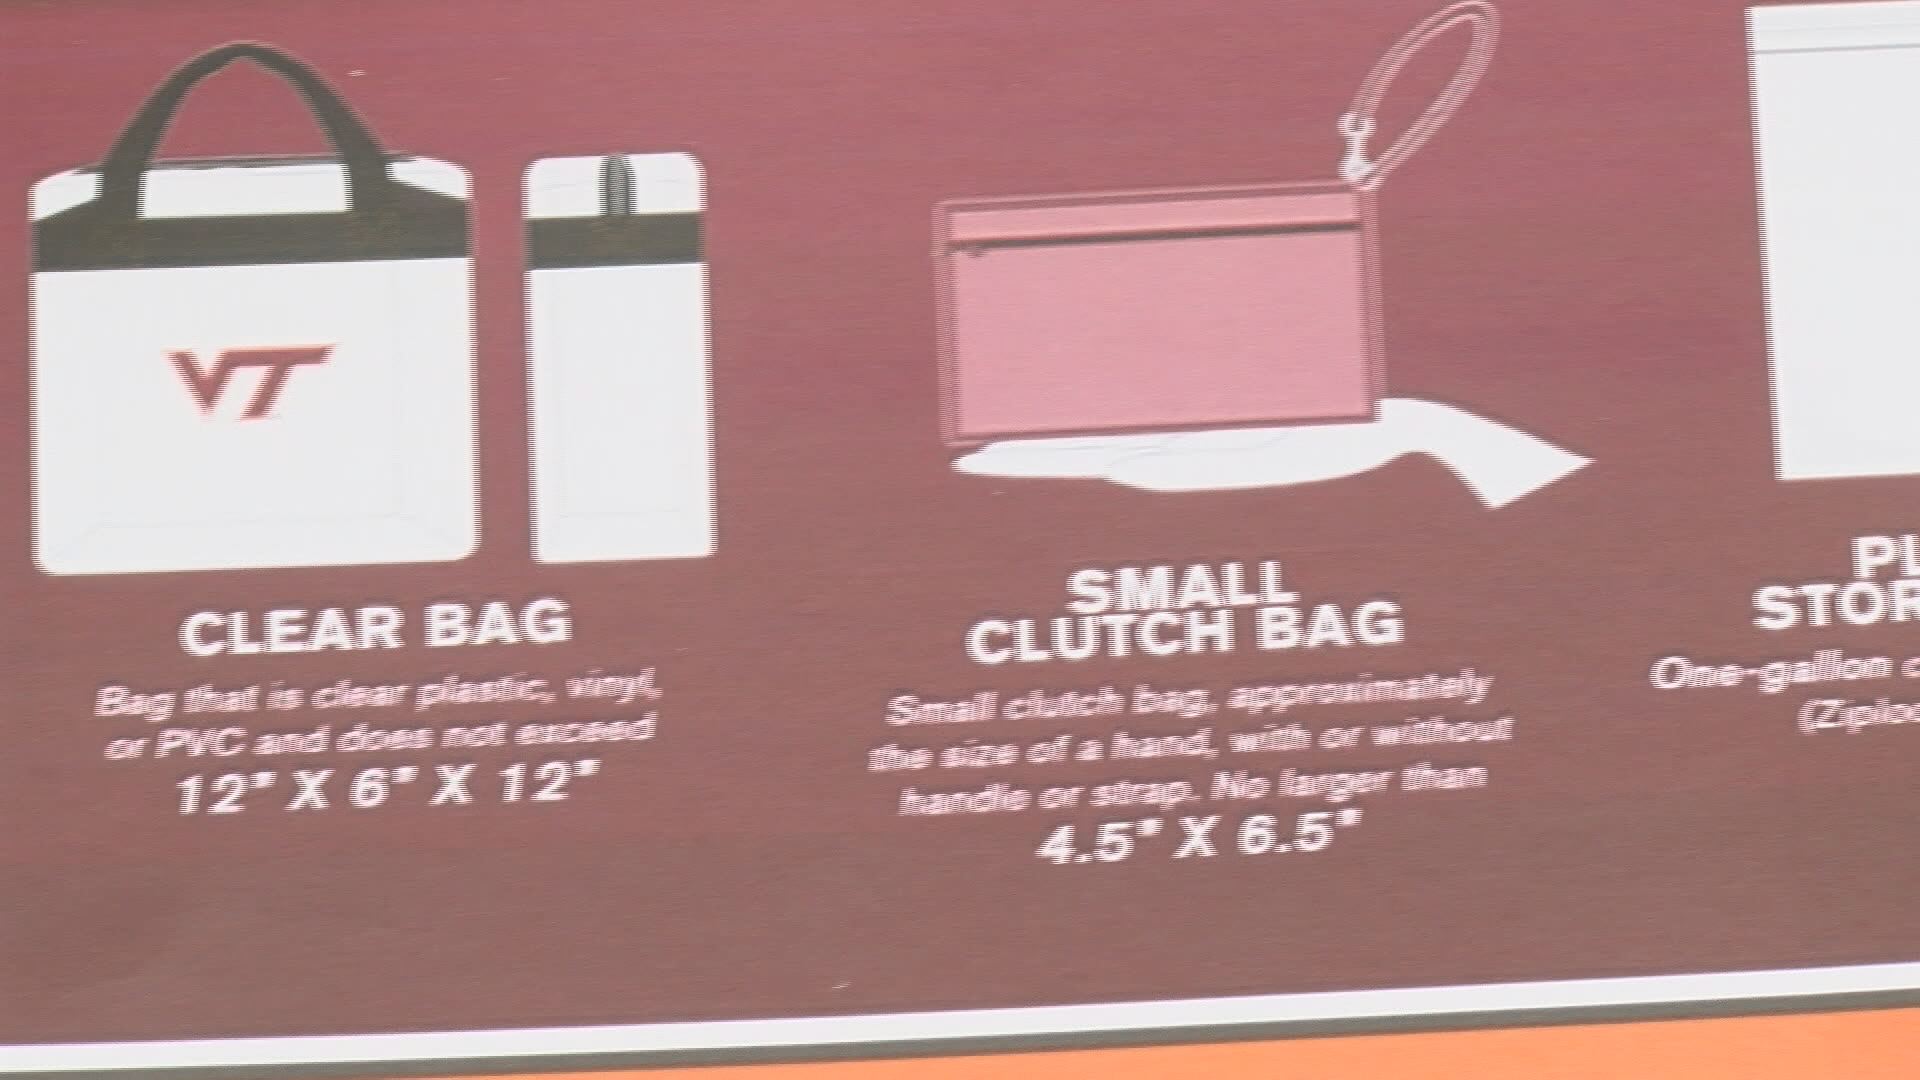 Clear bag policy reminder at Lane Stadium